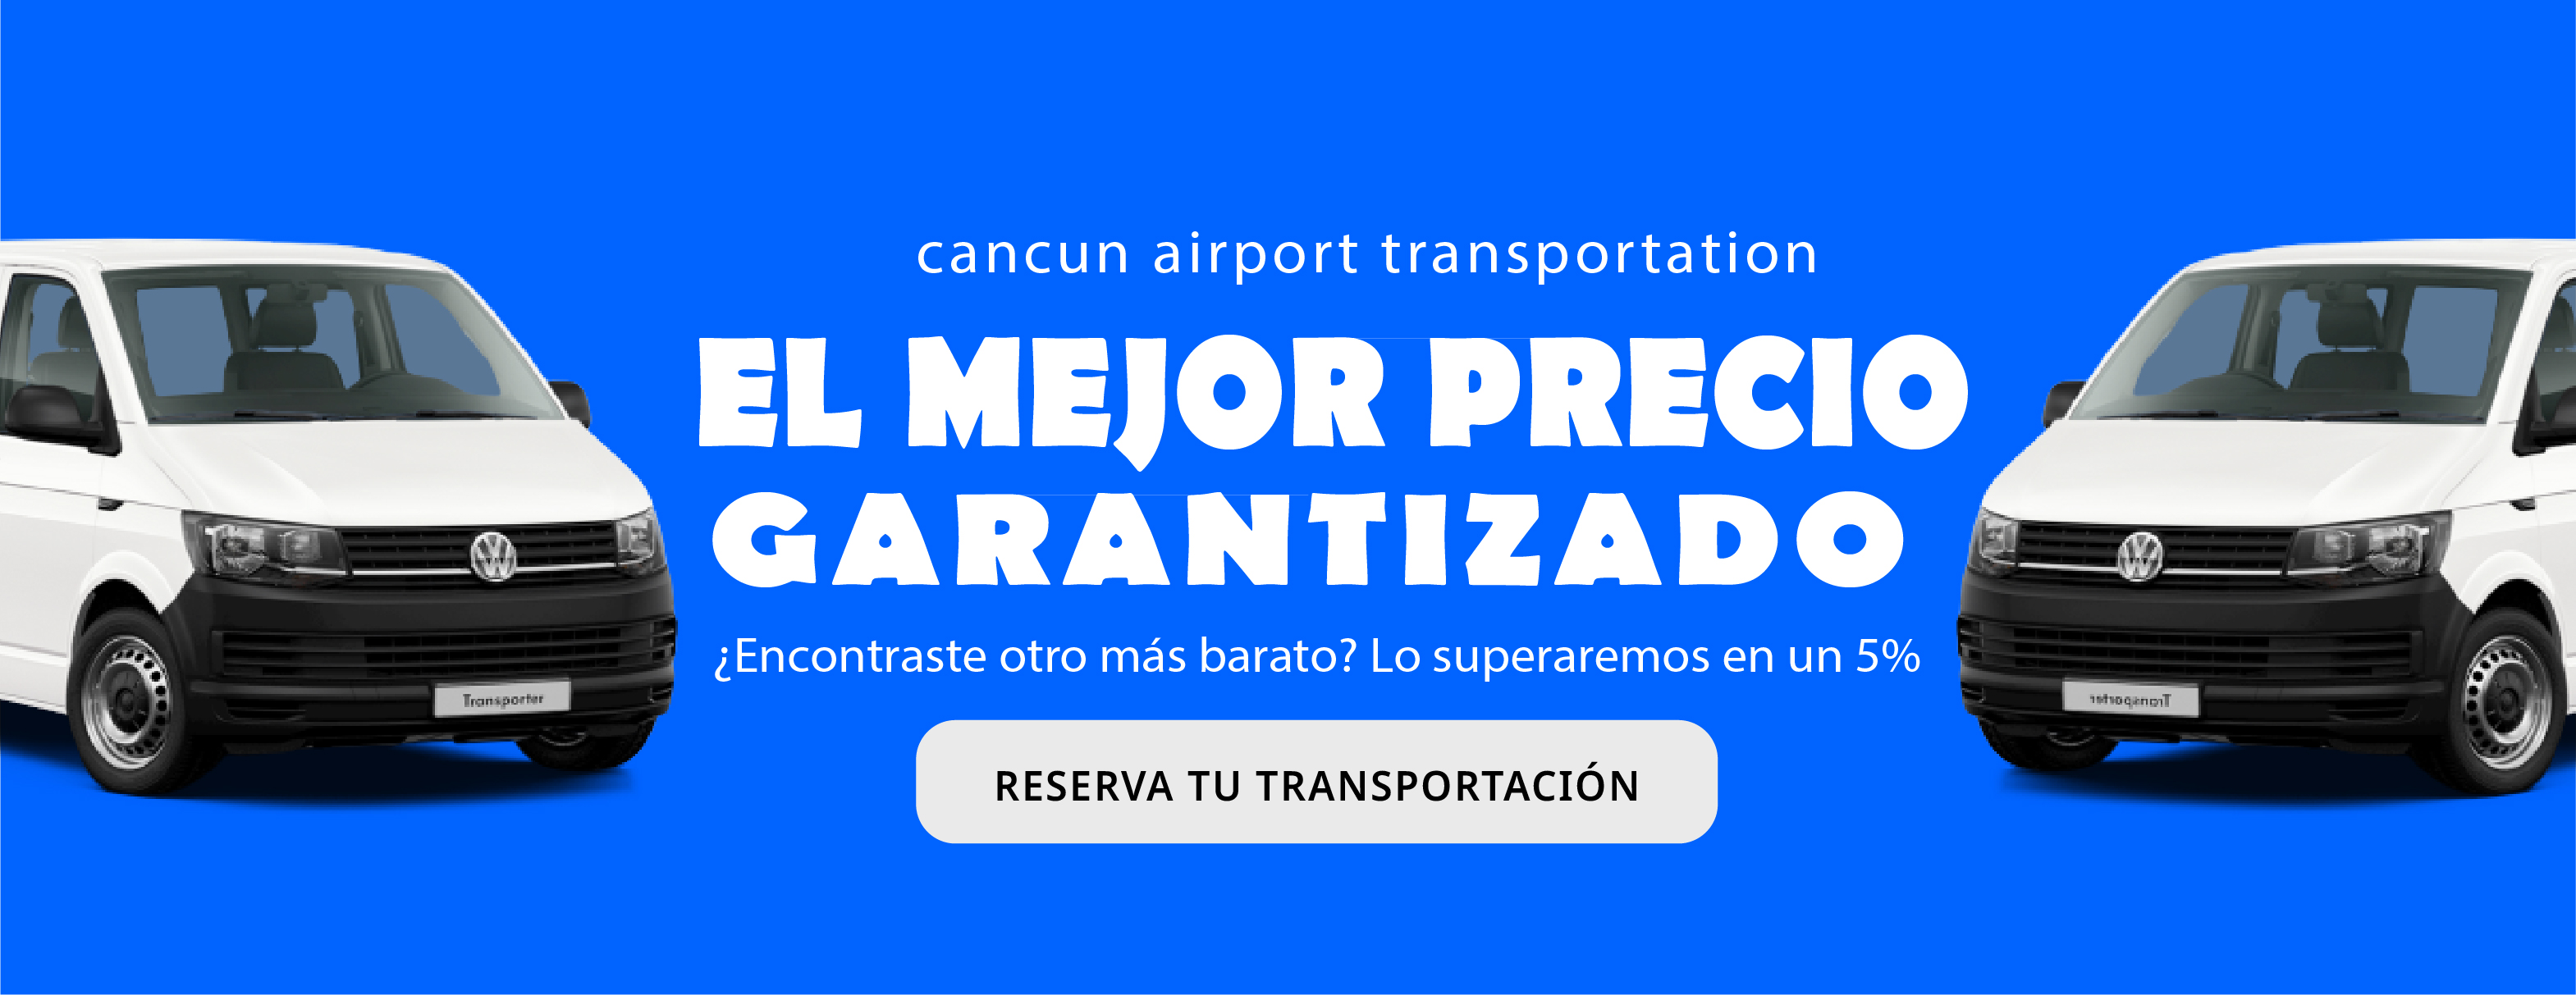 Transportacion en el aeropuerto de cancun